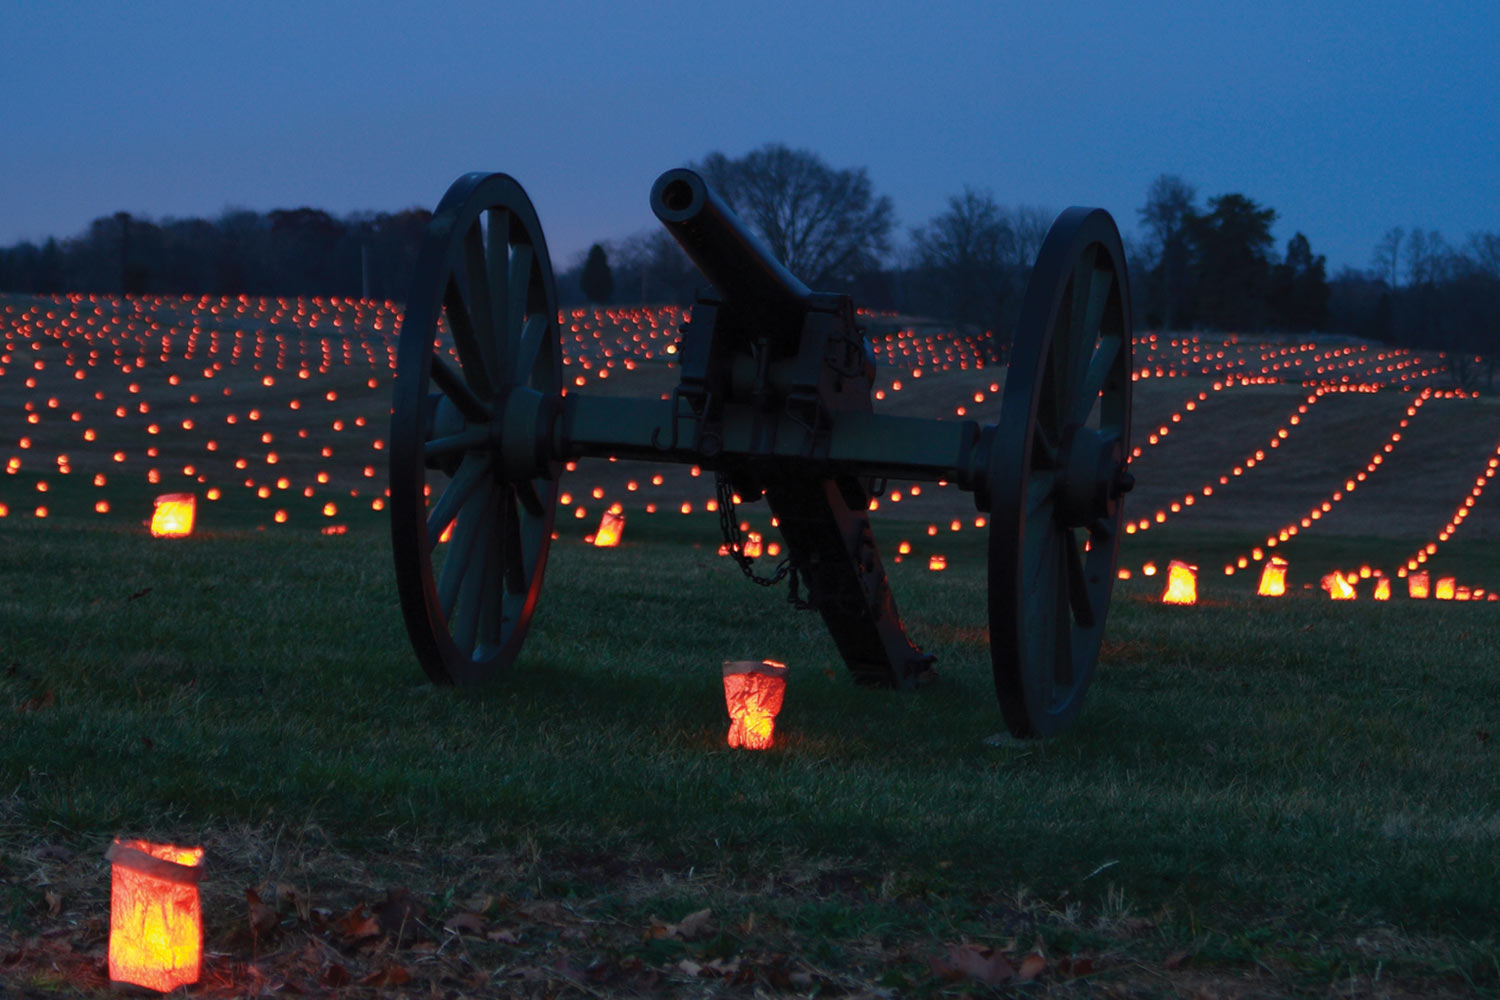 Annual Antietam National Battlefield Memorial Illumination